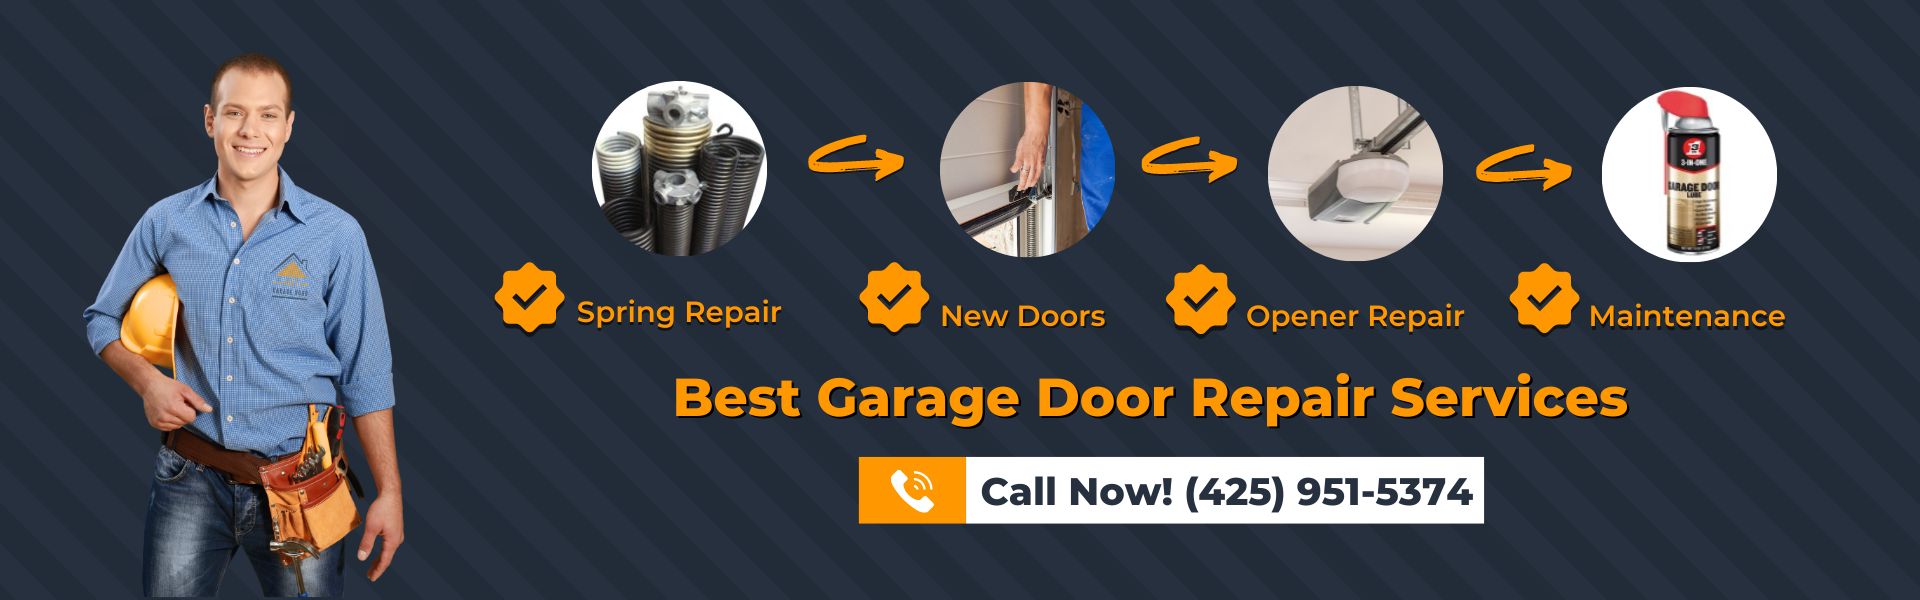 Best Garage Door Repair Services in WA